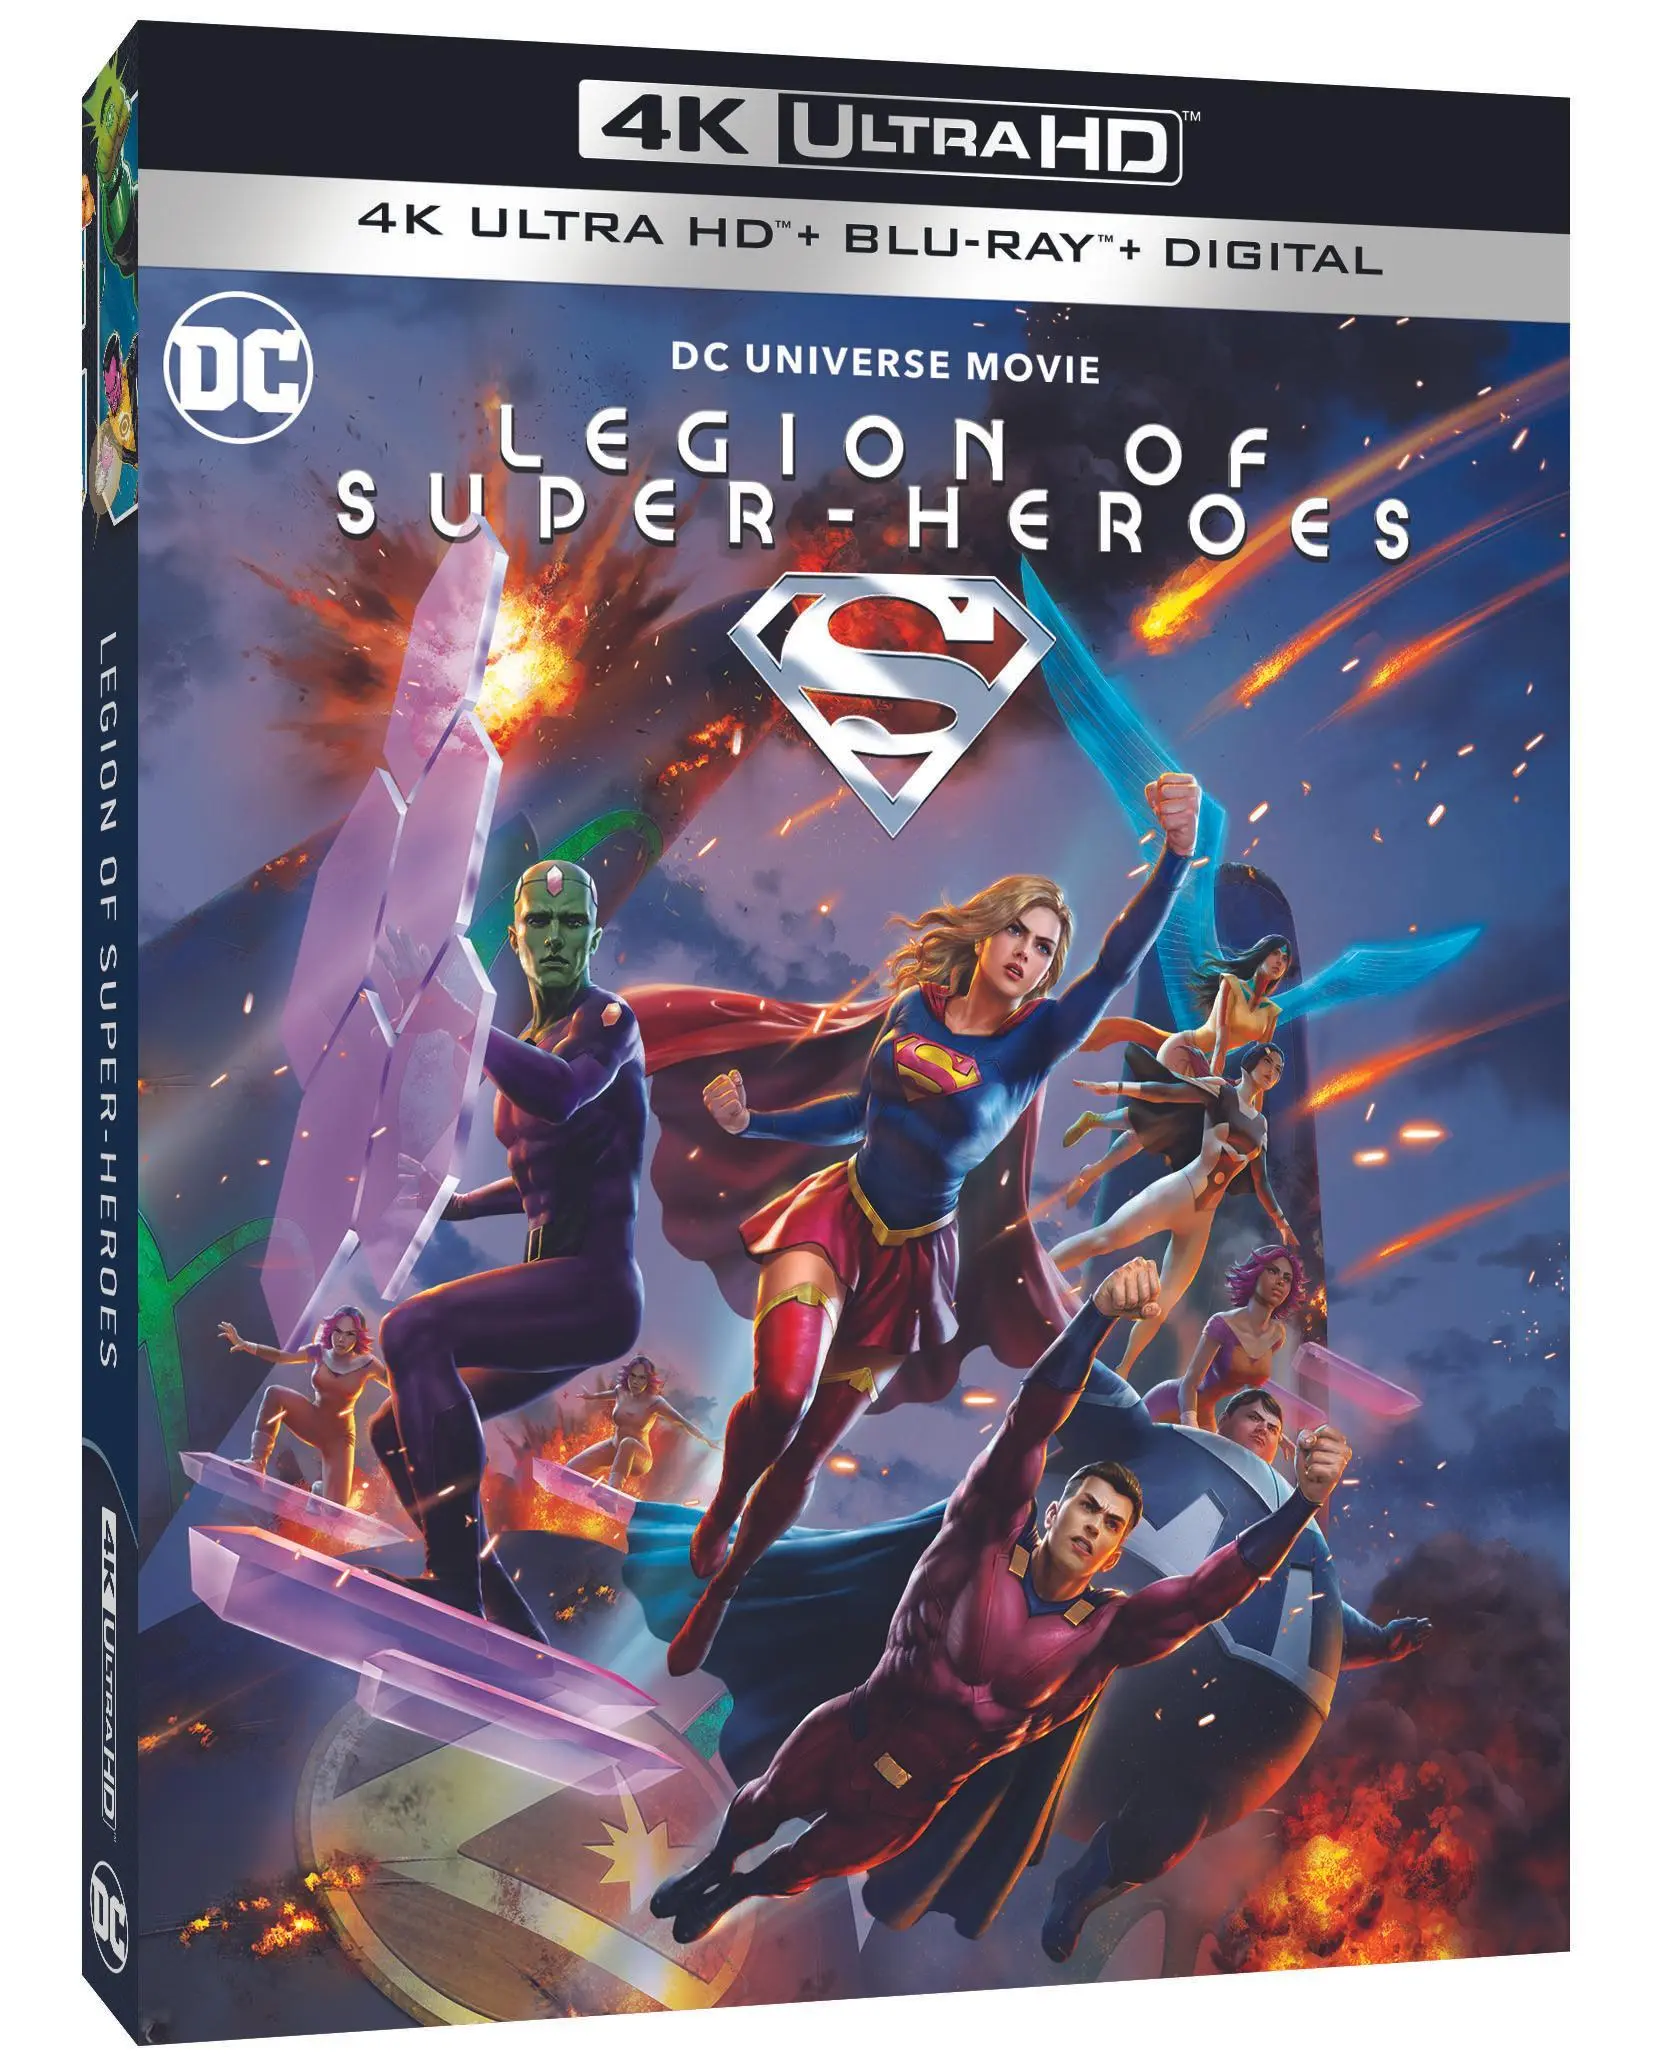 Legion of Super-Heroes de DC obtiene fecha de lanzamiento en Blu-ray